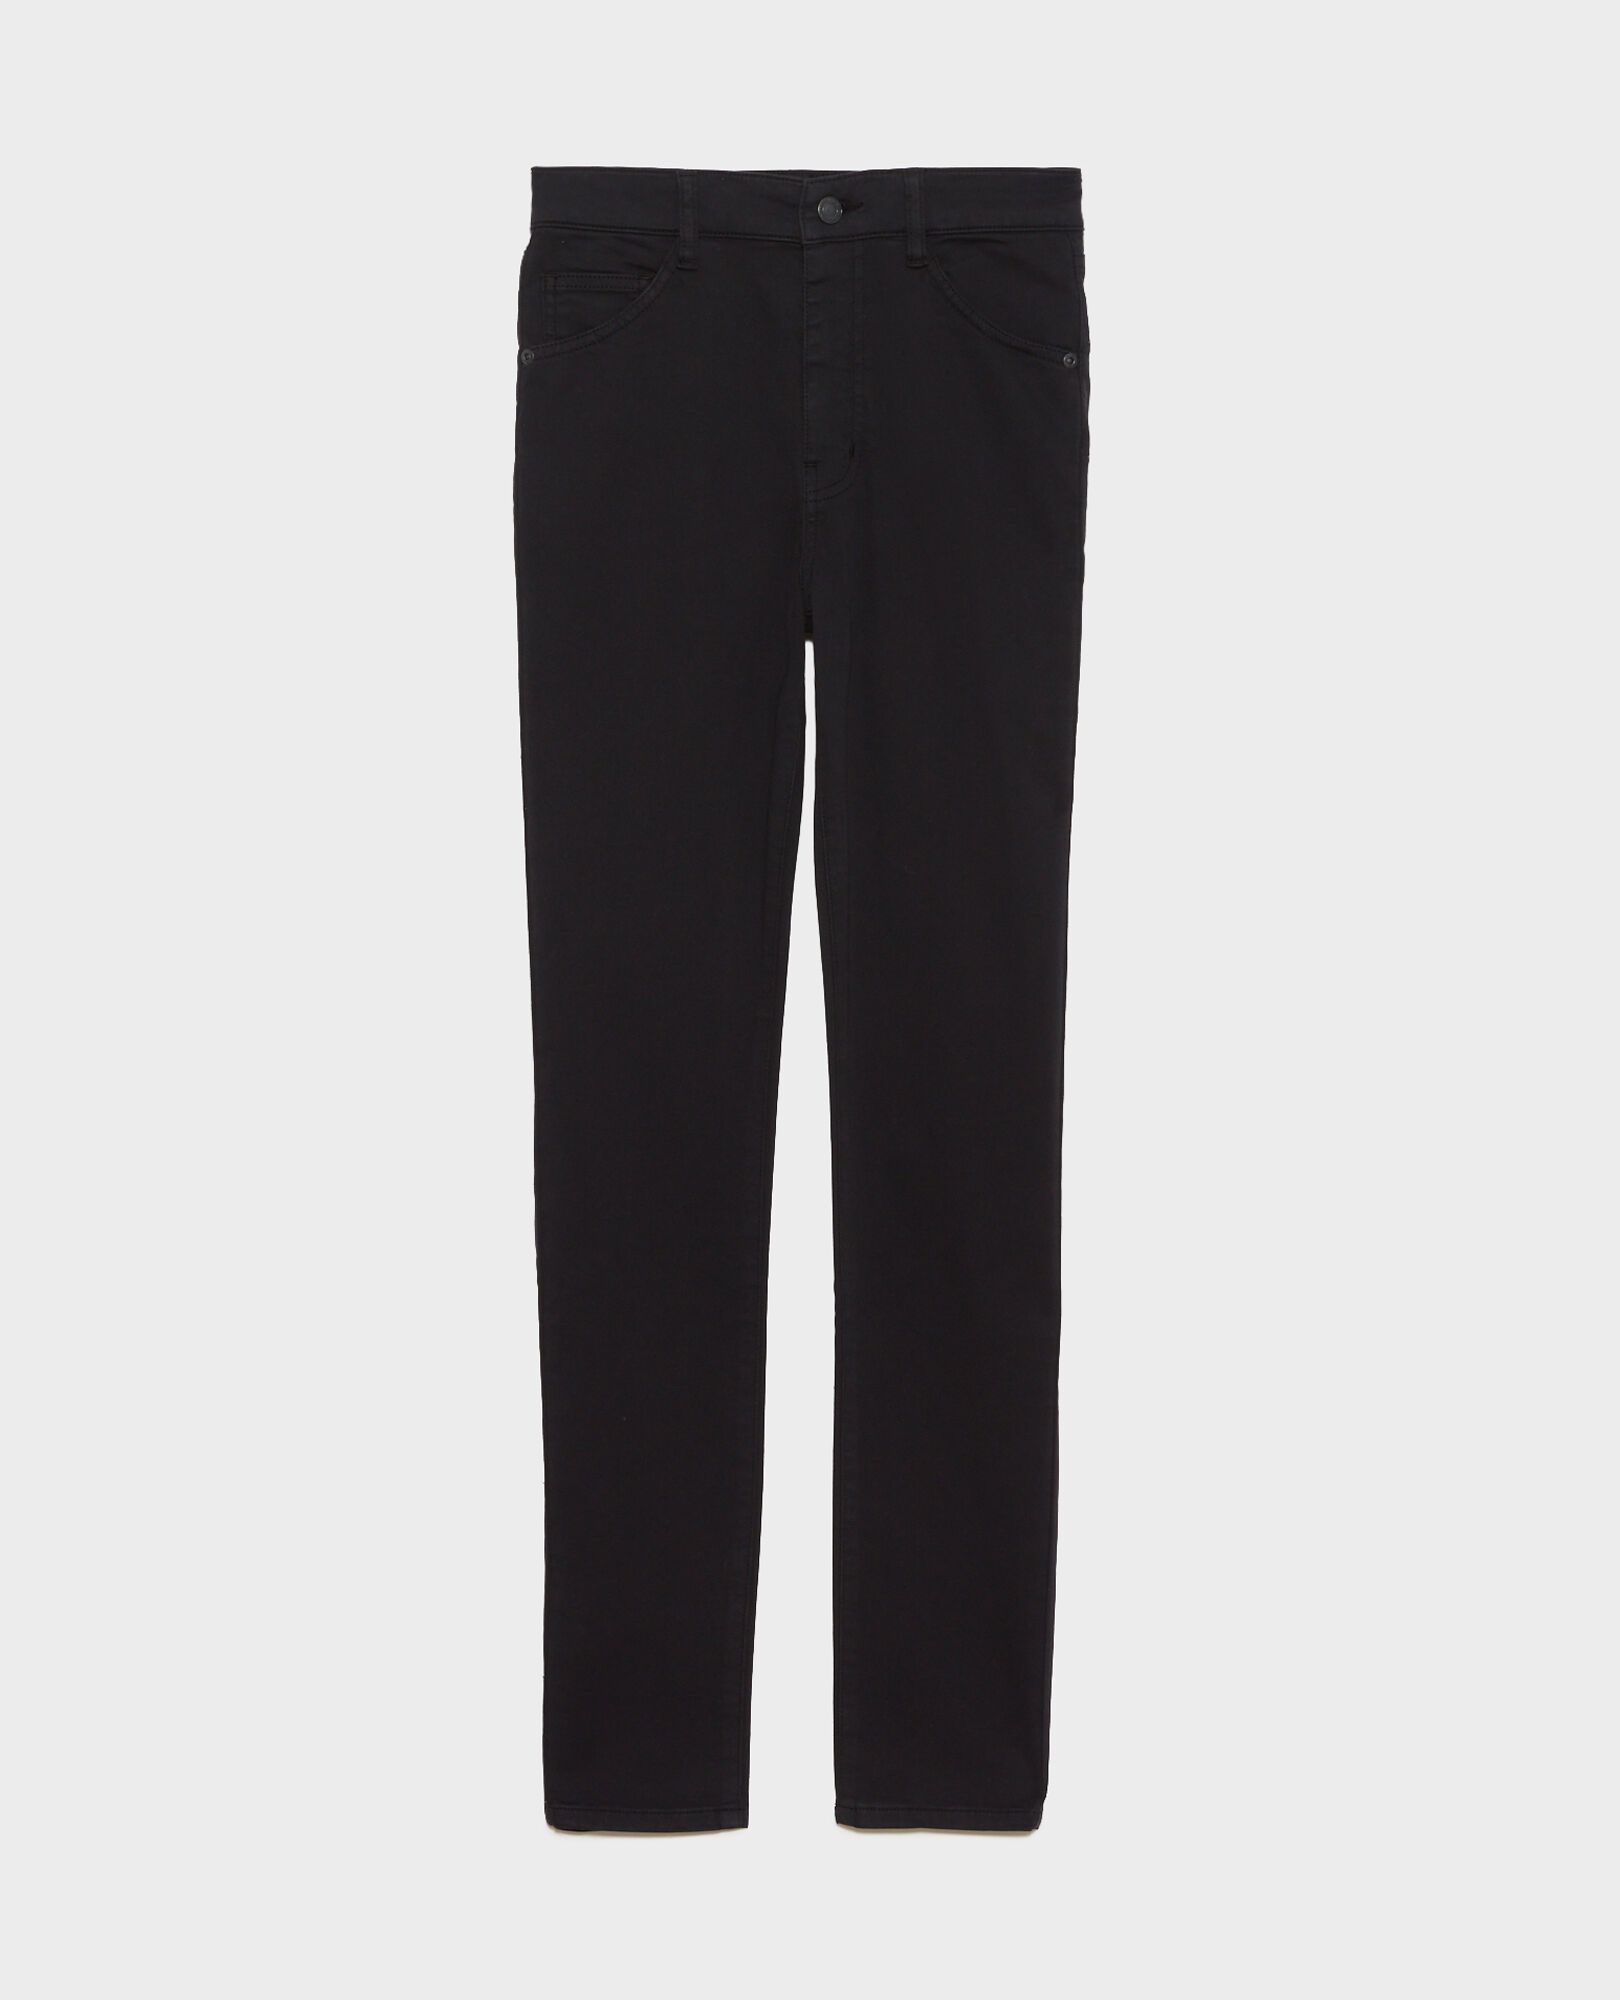 DANI - SKINNY - Jeans talle alto con 5 bolsillos Black beauty Pozakiny